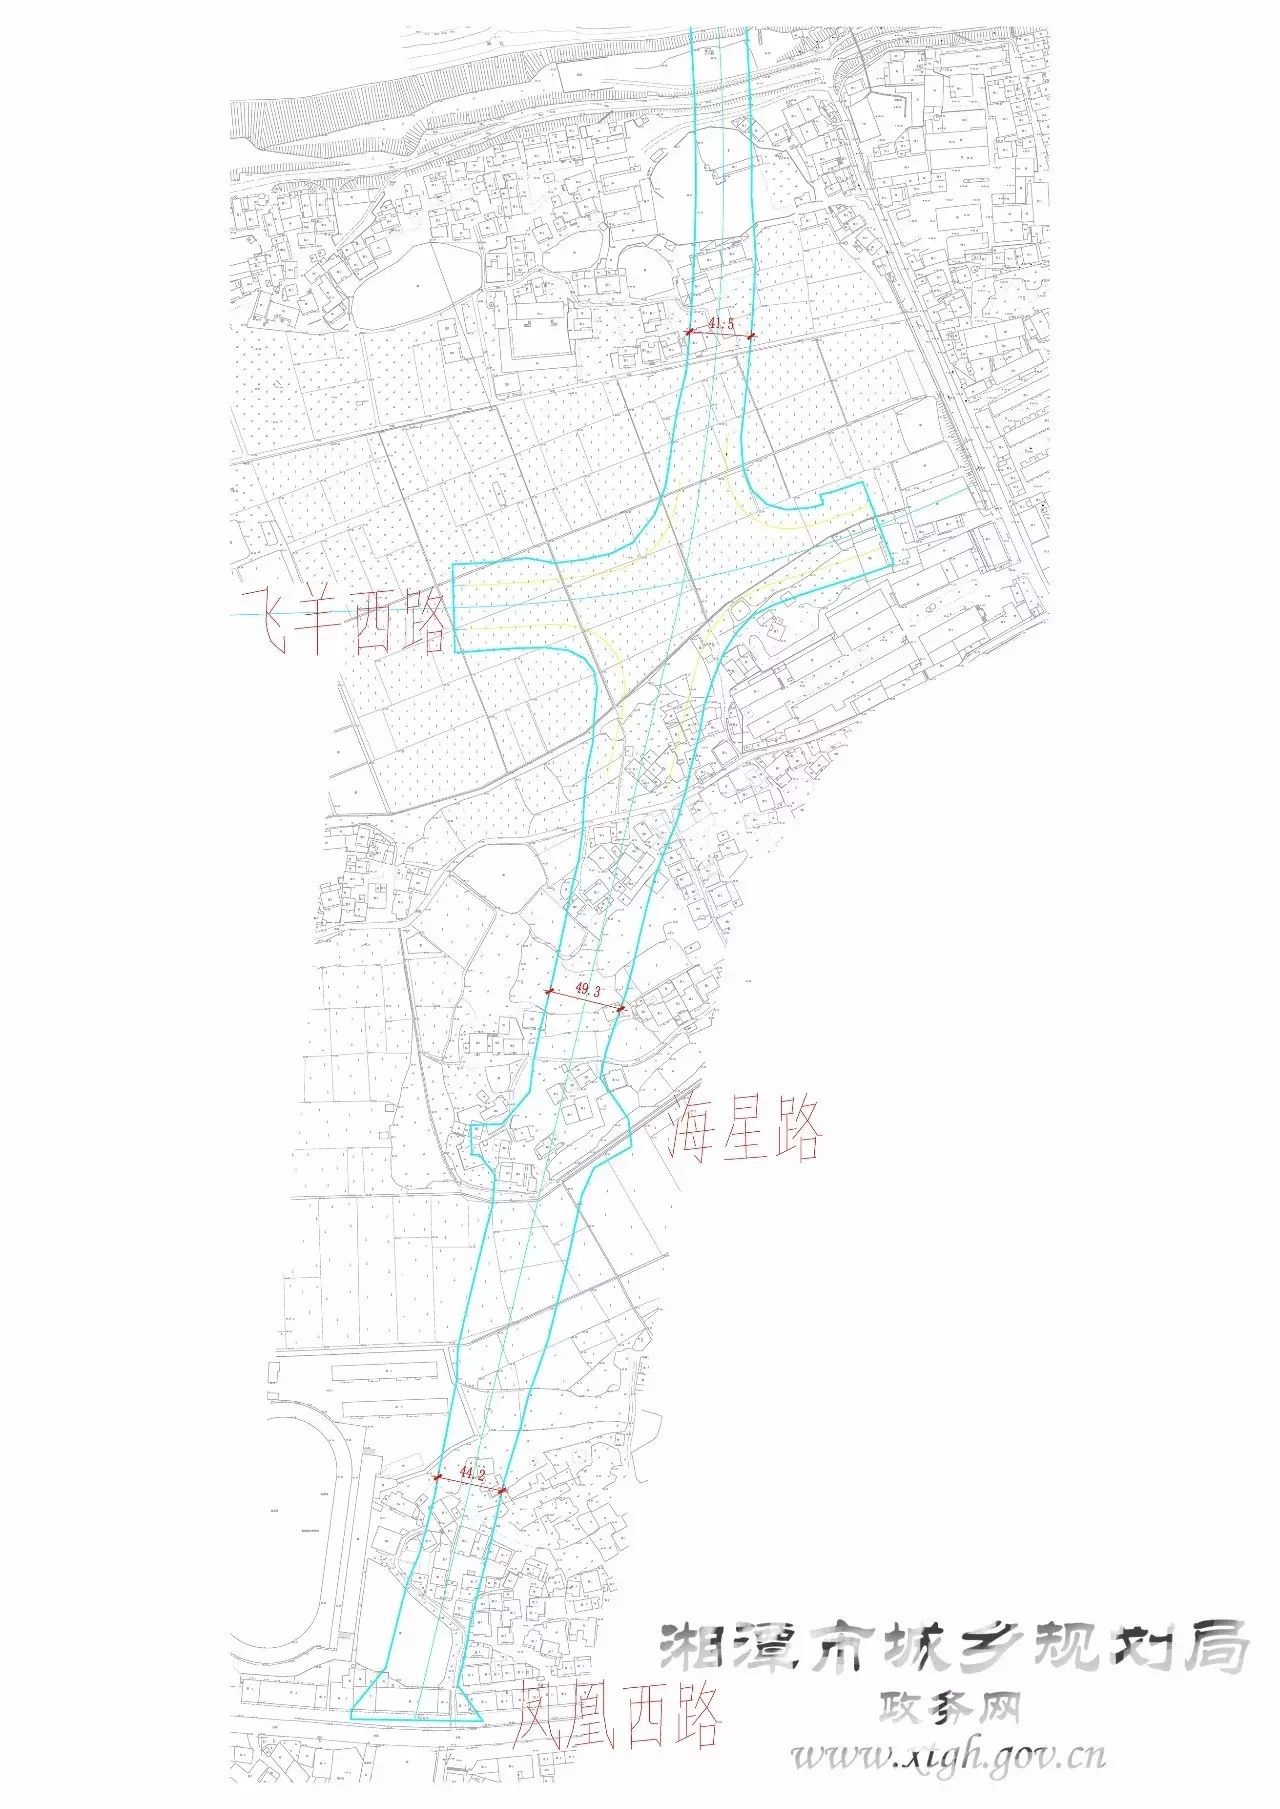 湘潭到易俗河,花石的新建道路正在公示中